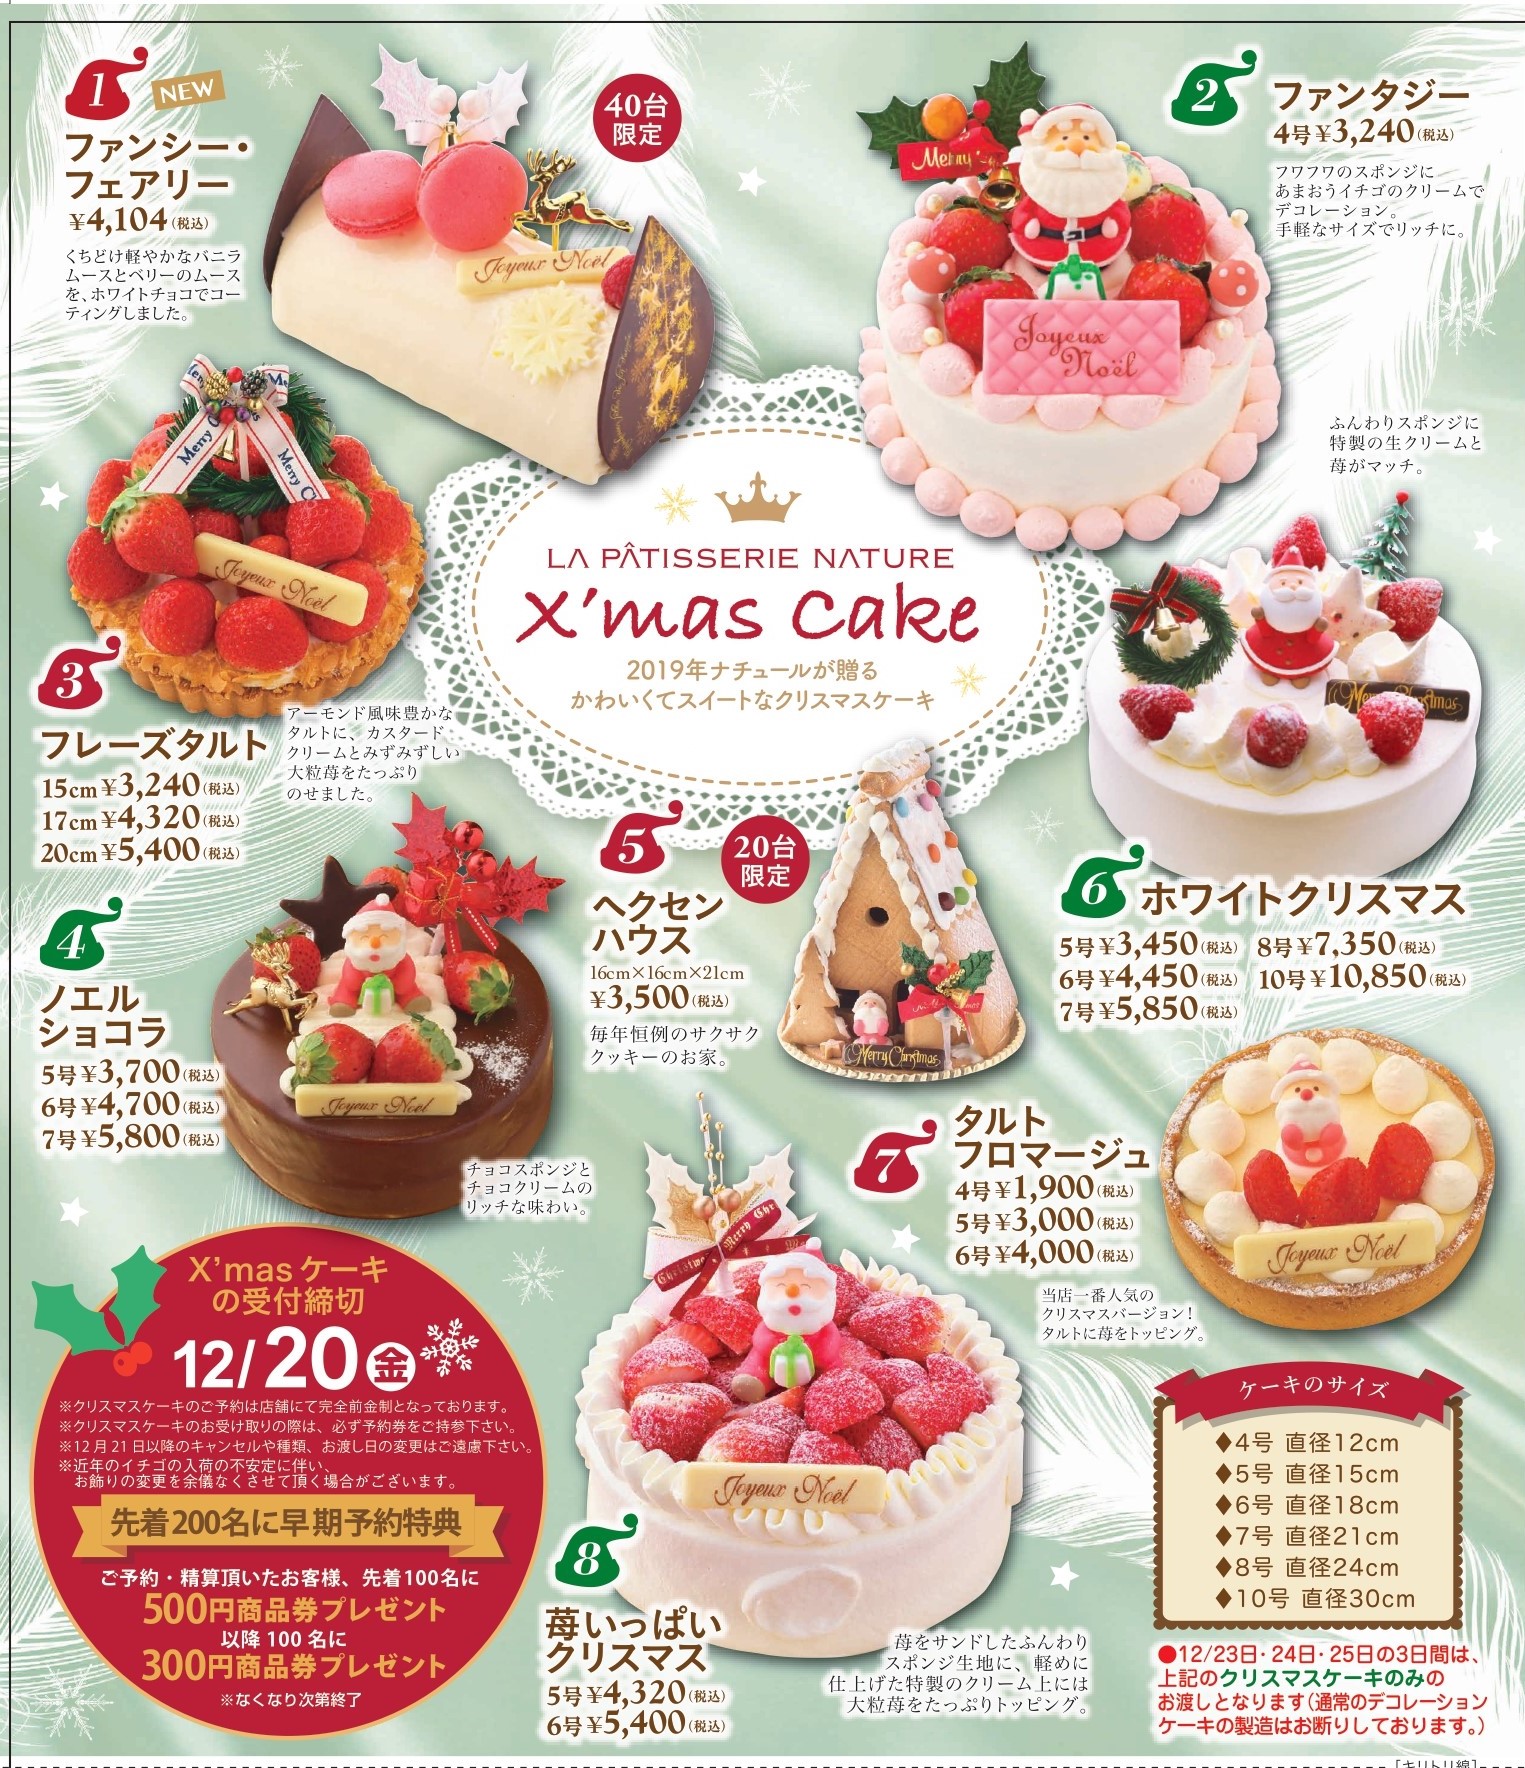 クリスマスケーキの御予約 開始いたしました 滋賀県のこだわり濃厚チーズケーキ ナチュール